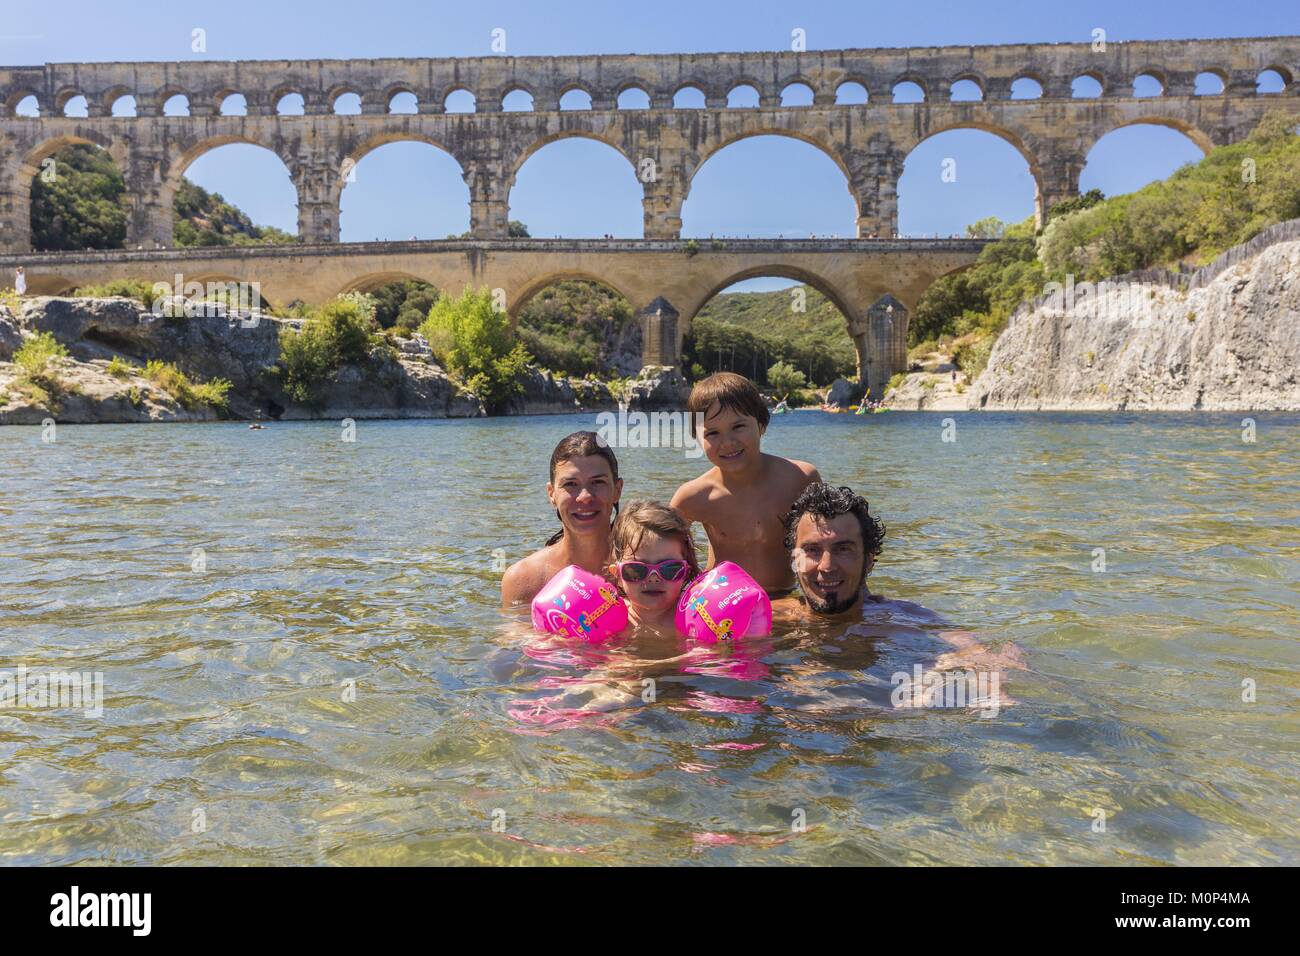 Francia,Gard,Vers-Pont-du-Gard,el Pont du Gard, catalogado como Patrimonio de la Humanidad por la UNESCO,Gran Sitio de Francia,acueducto romano del siglo I que pasos sobre el Gardon Foto de stock